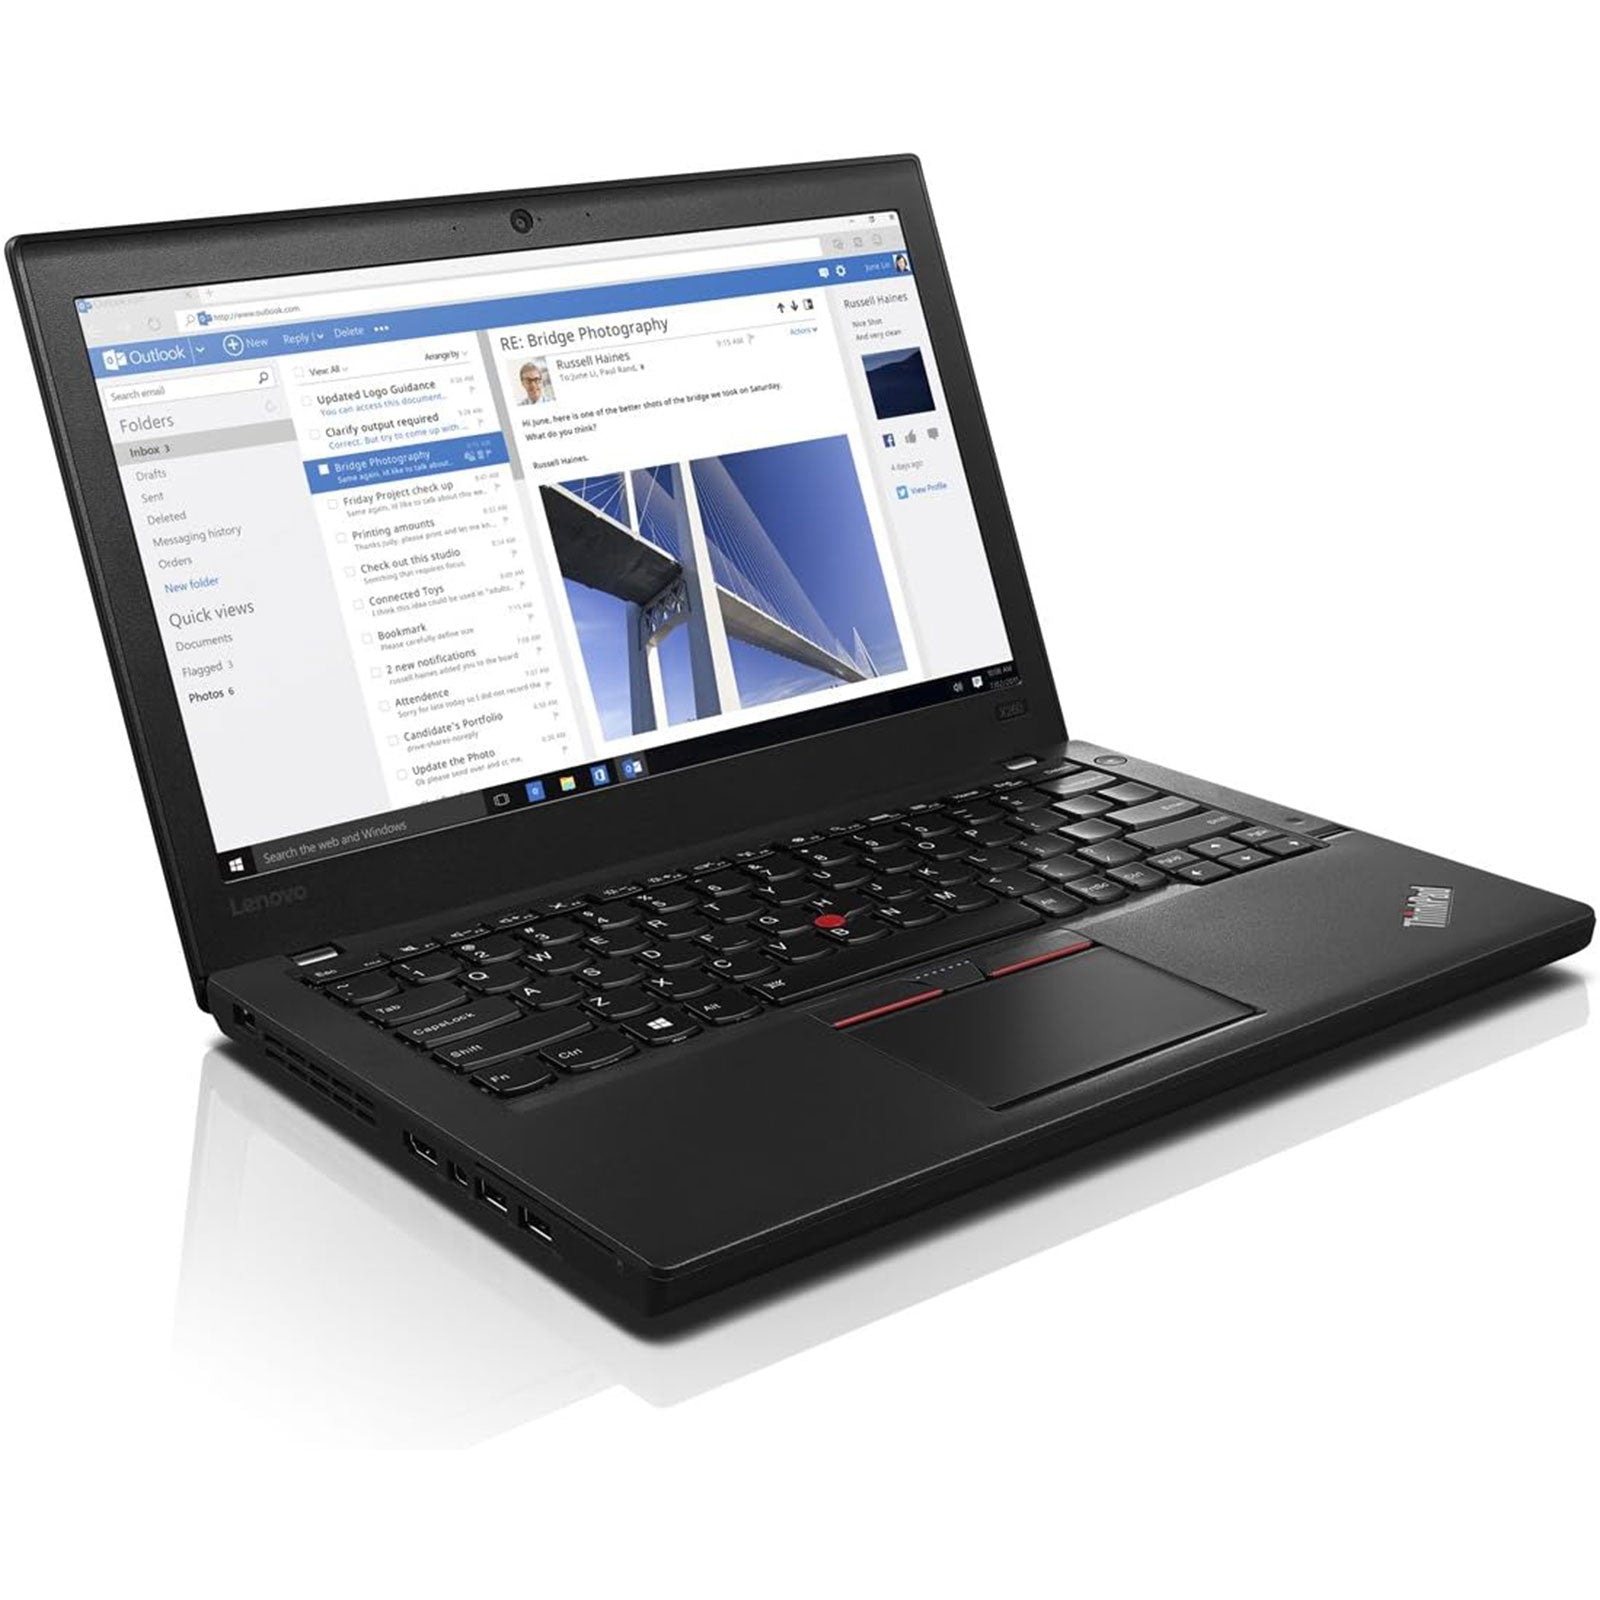 Notebook ricondizionato - Grado A - Lenovo ThinkPad X260 Notebook 12" Intel i5-6200U Ram 8GB SSD 240GB Webcam (Ricondizionato Grado A) - Disponibile in 2-4 giorni lavorativi